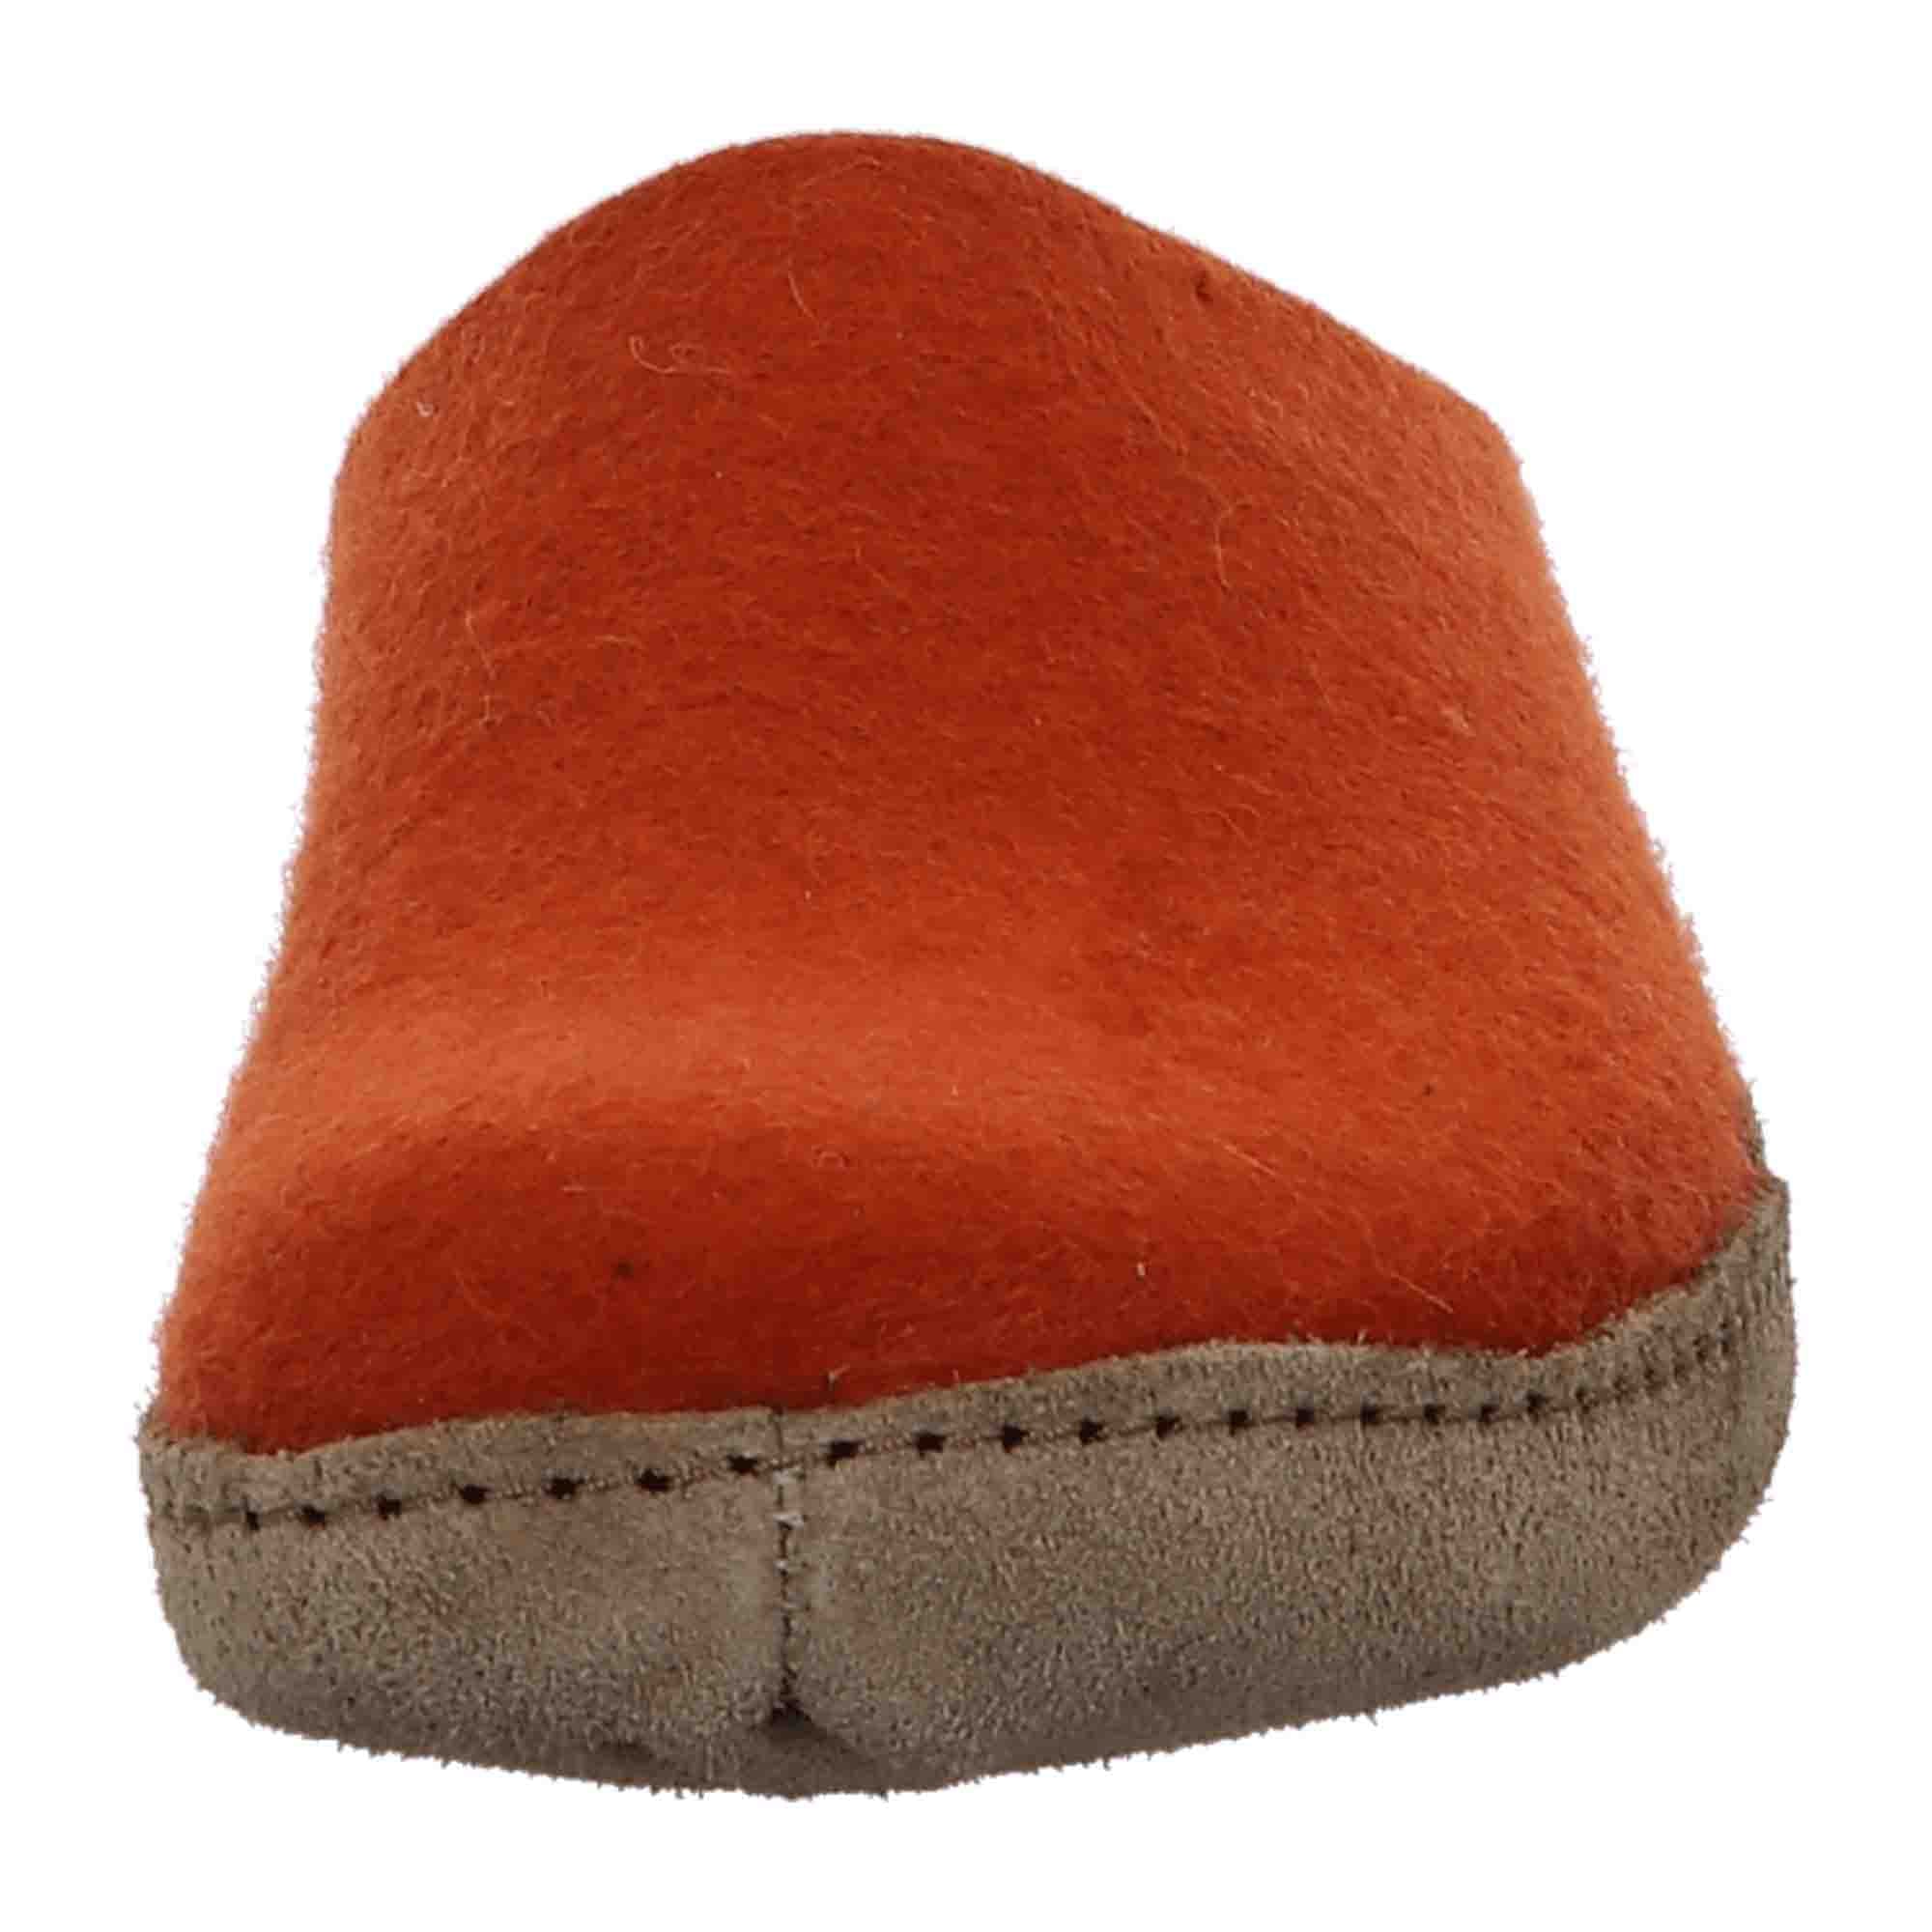 Haflinger Women's Slippers in Vibrant Orange - Comfortable & Stylish